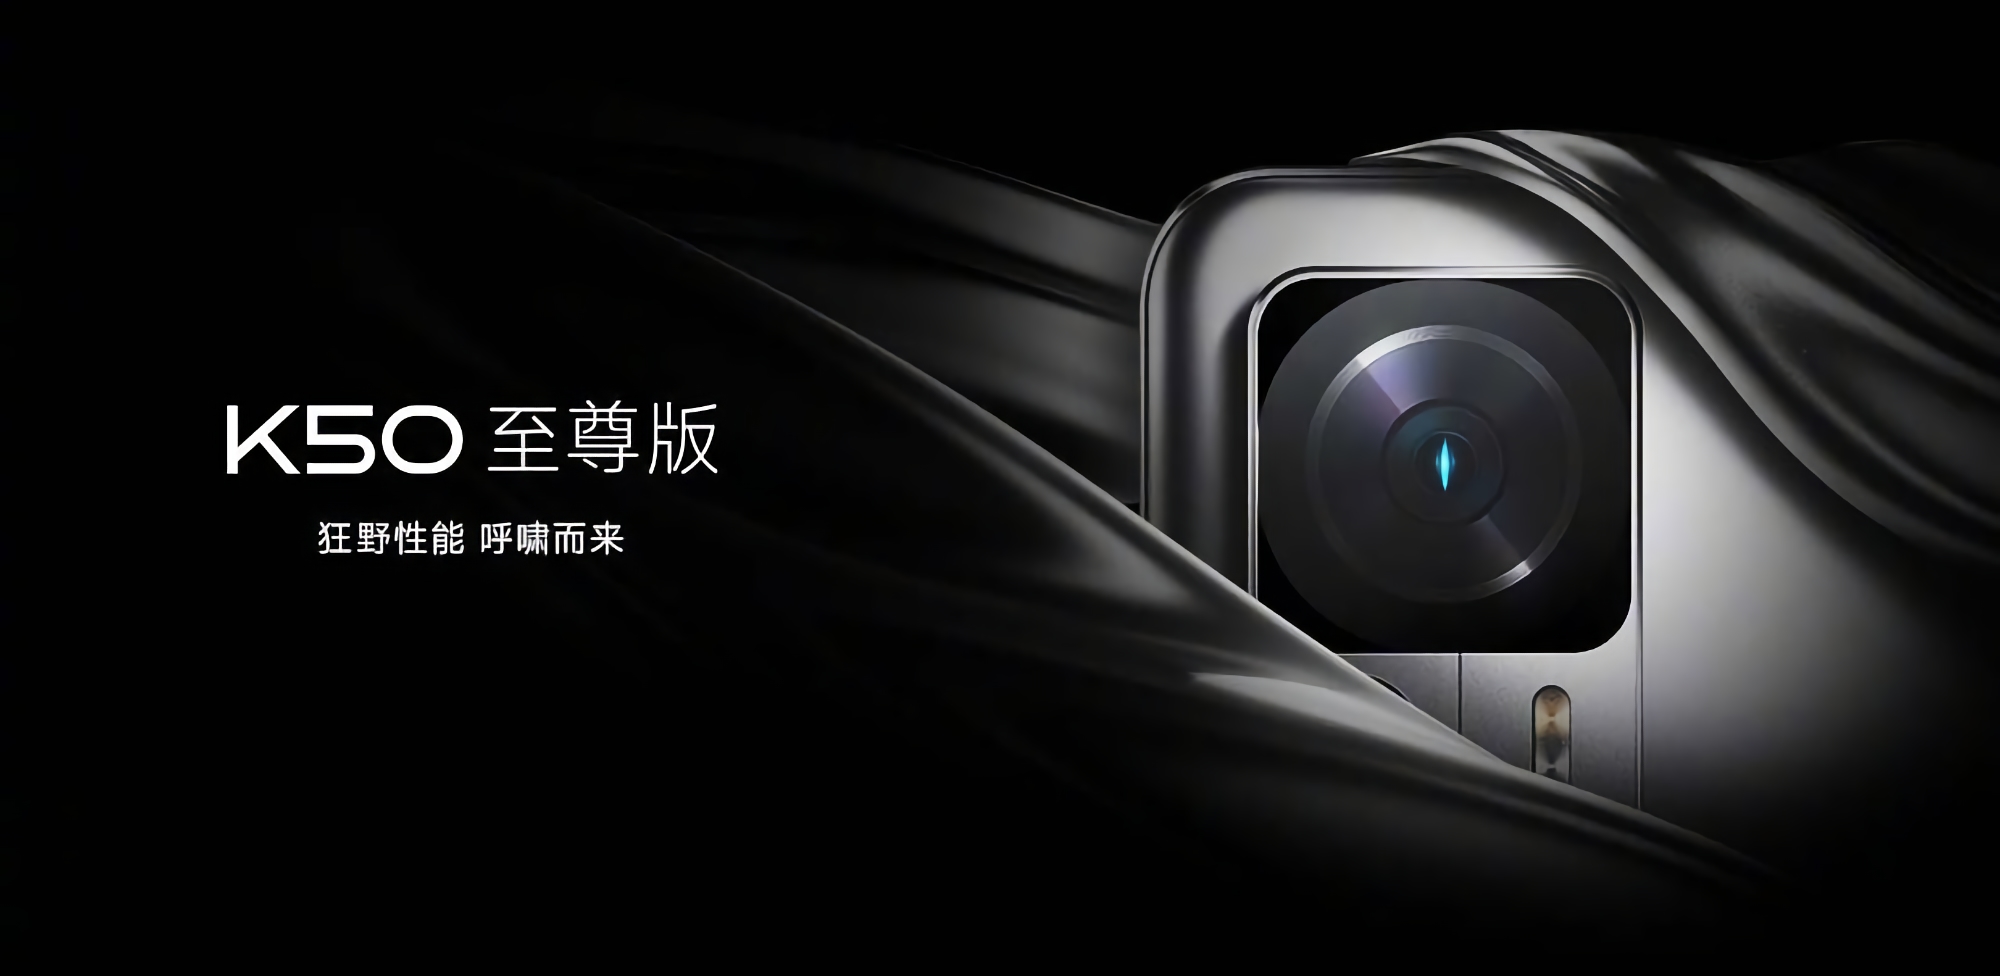 Xiaomi revela cuándo presentará el smartphone Redmi K50 Ultra con cámara de 108 MP y chip Snapdragon 8+ Gen 1